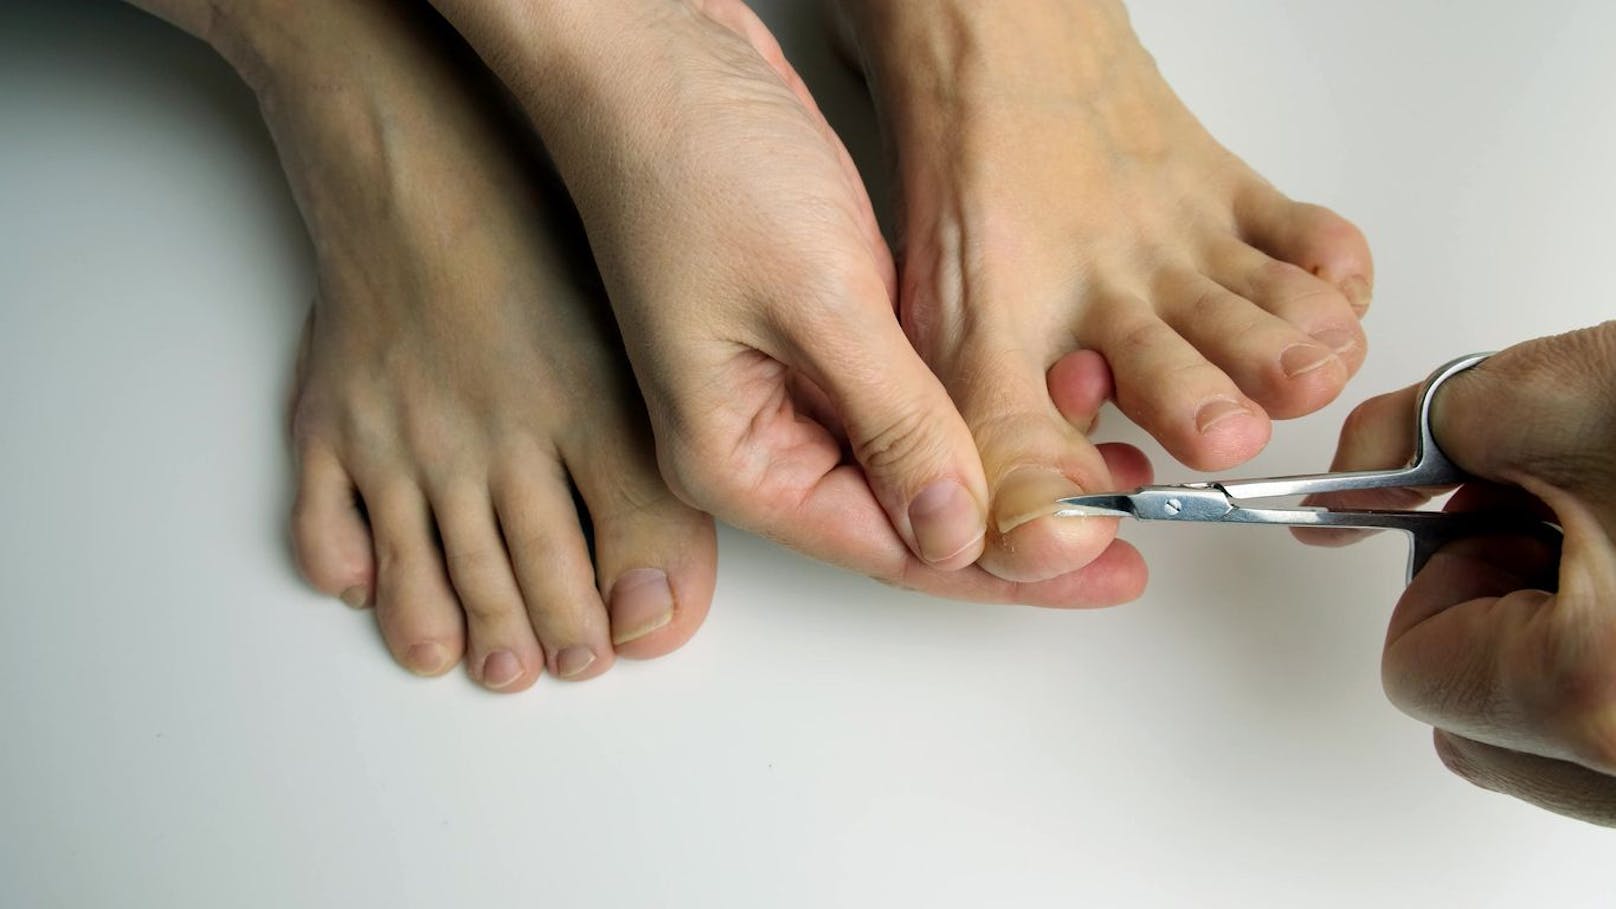 <strong>Die richtige Länge:</strong>&nbsp;Die richtige Nagellänge ist nicht nur für die Optik, sondern auch für die Gesundheit deiner Nägel wichtig. Wenn du deine Fußnägel zu kurz schneidest, können sie deine Zehen nicht mehr richtig schützen. Du merkst das zum Beispiel, wenn deine Schuhe einen unangenehmen Druck auf deine Nägel ausüben. Auch Entzündungen und Schäden am Nagelbett können durch zu kurz geschnittene Nägel entstehen.&nbsp;Die Zehenkuppe sollte nach dem Kürzen gerade noch vom Nagel bedeckt sein. Der verbleibende freie Nagelrand sollte etwa <strong>1-2 Millimeter</strong> lang sein.